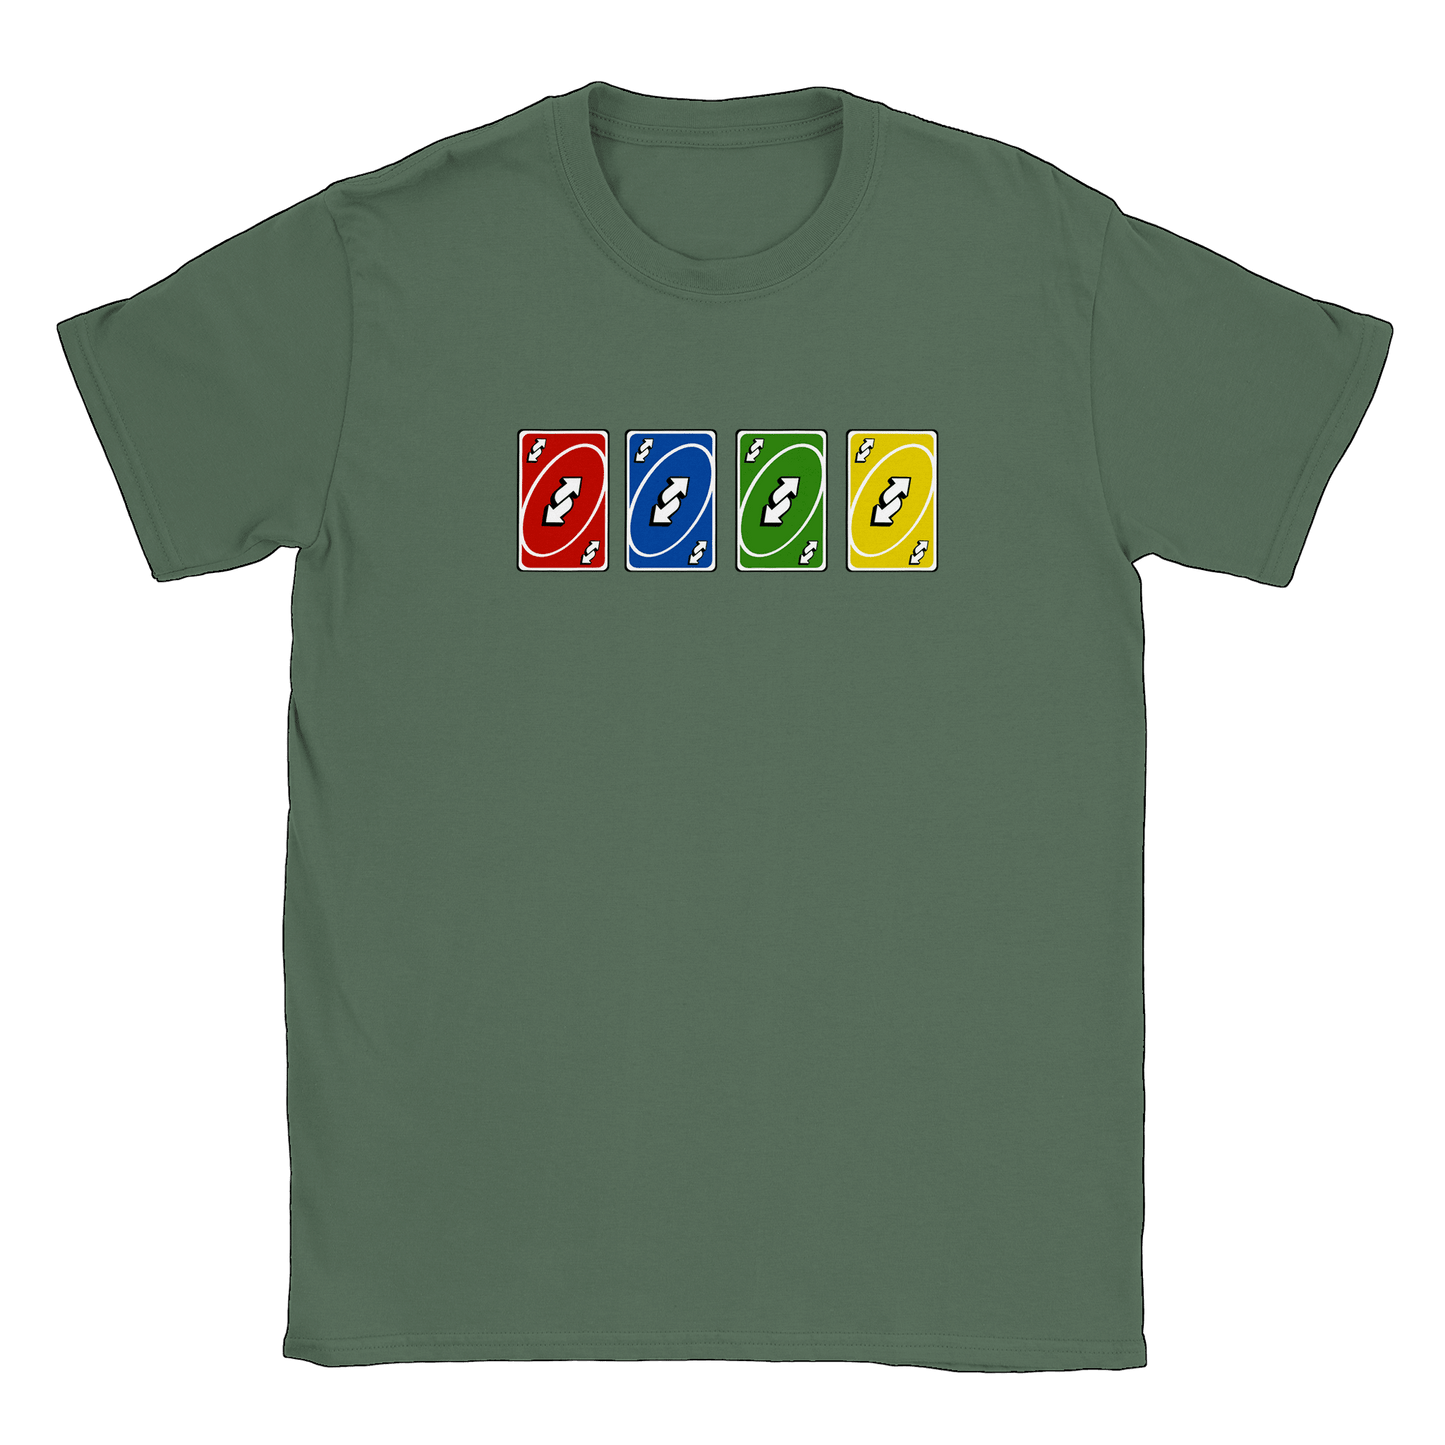 Vändkort alla färger - T-shirt Military Green